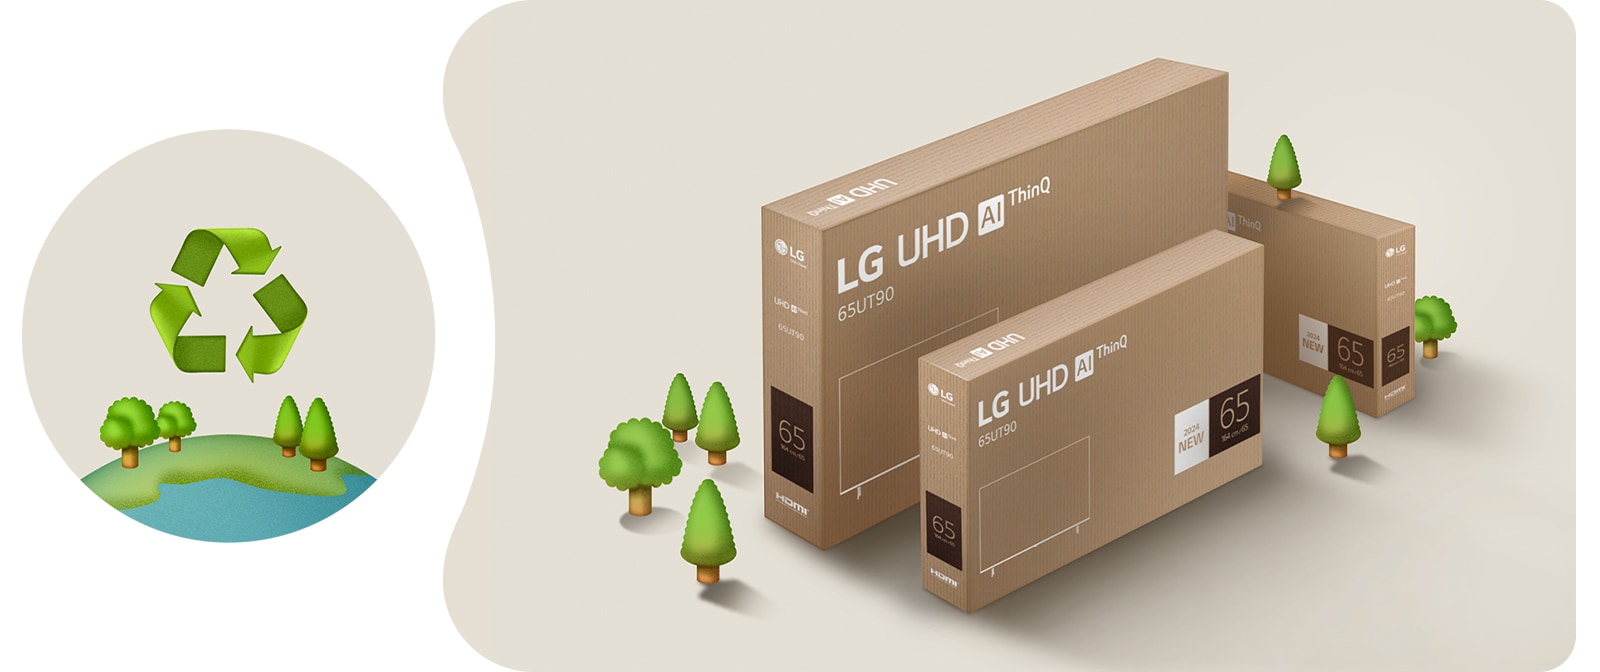 บรรจุภัณฑ์ LG UHD บนพื้นหลังสีเบจพร้อมภาพประกอบต้นไม้